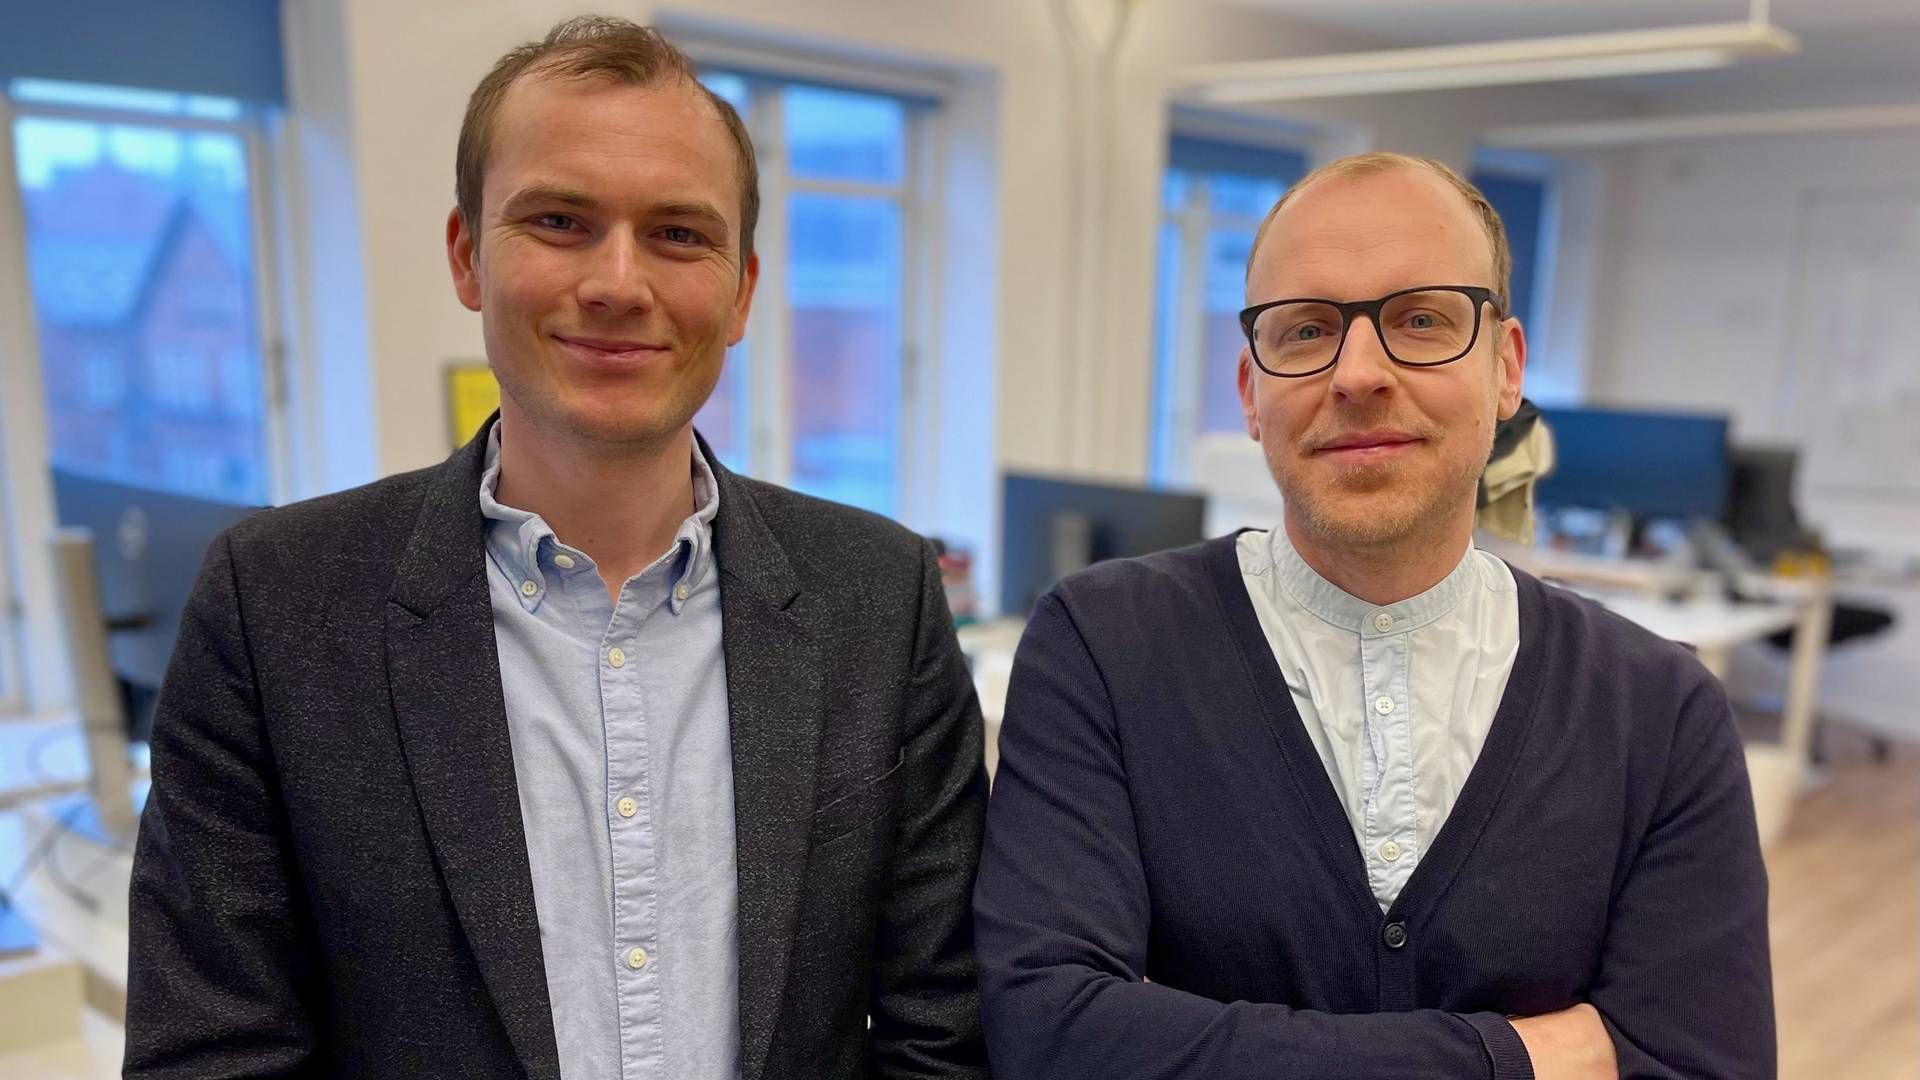 Adm. direktør Henrik J. Mondrup (tv) og CTO Esben T. Bjerregaard har sammen stiftet Orbiscure.